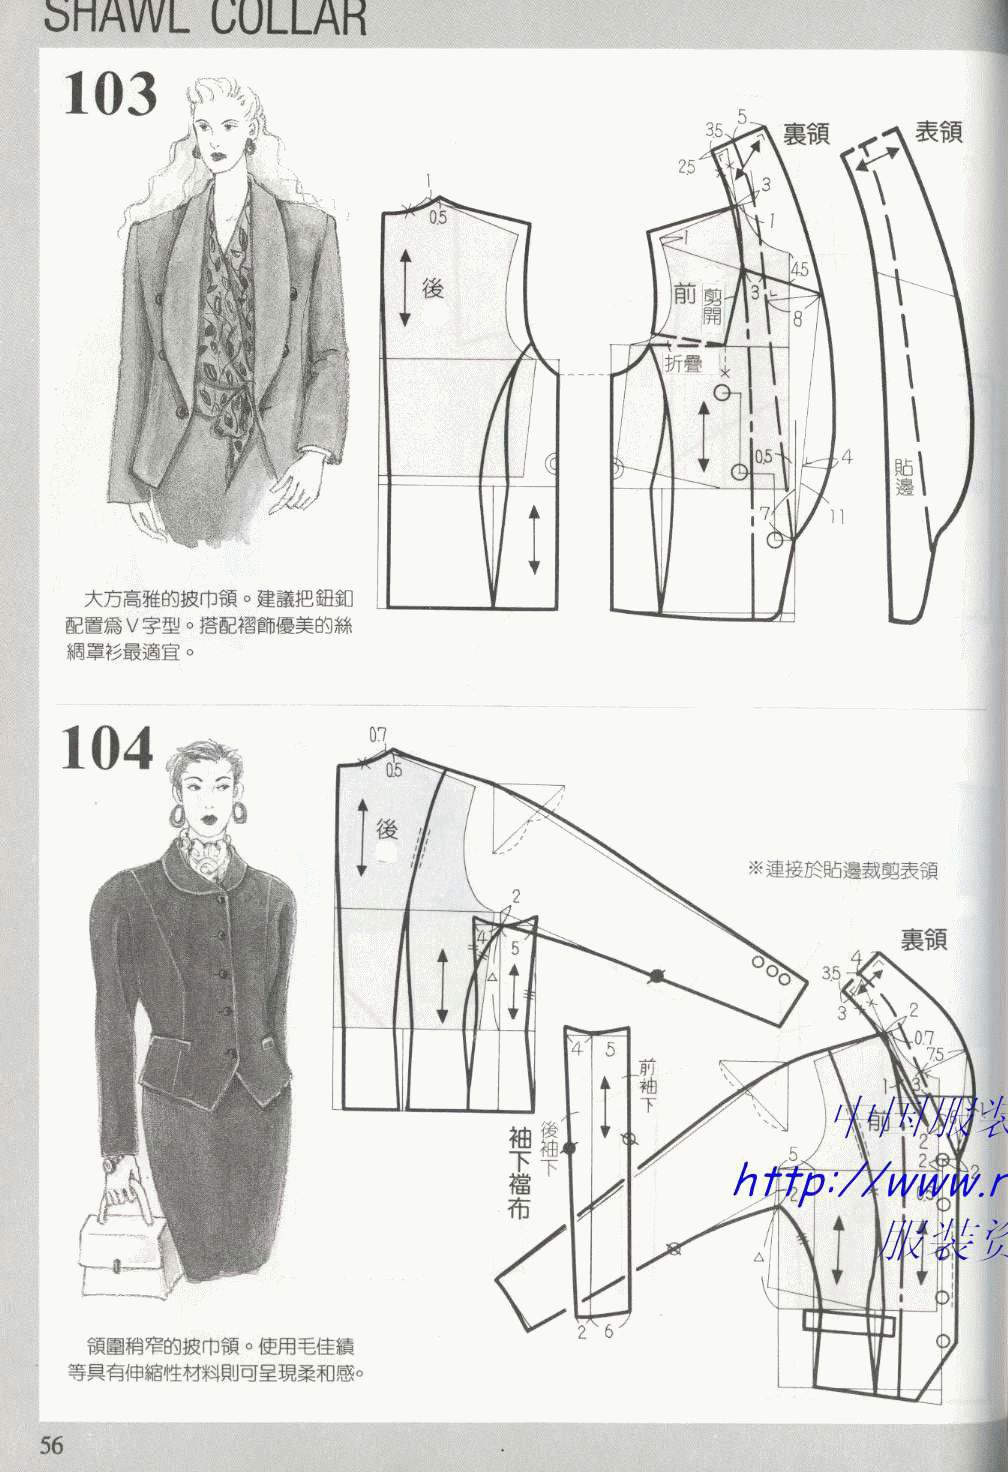 [转载]服装图纸集|188种领子的款式与图纸(下)